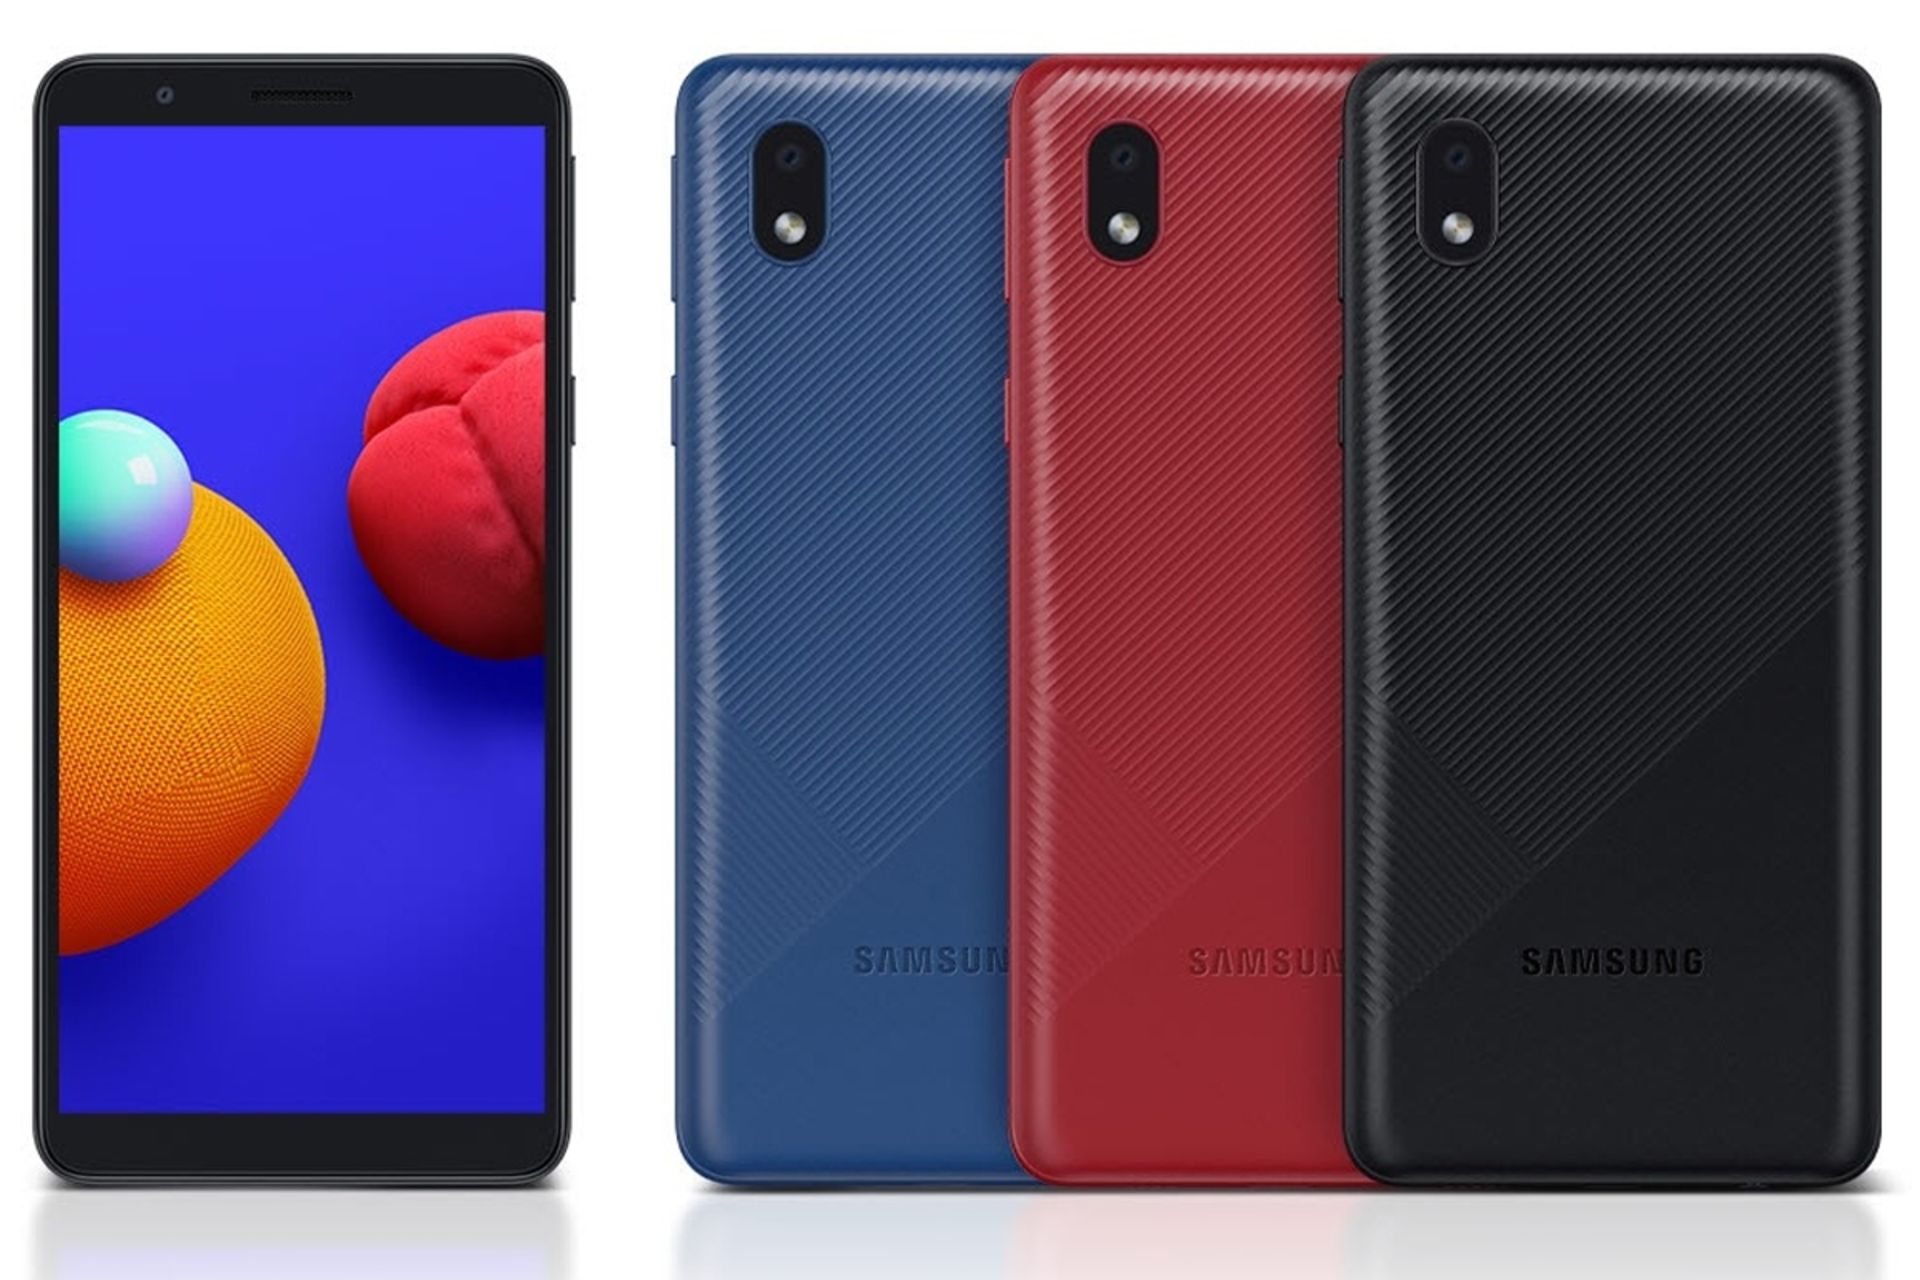 نمایشگر و پنل پشتی گلکسی ای 01 کور سامسونگ / Galaxy A01 Core رنگ مشکی و آبی و قرمز